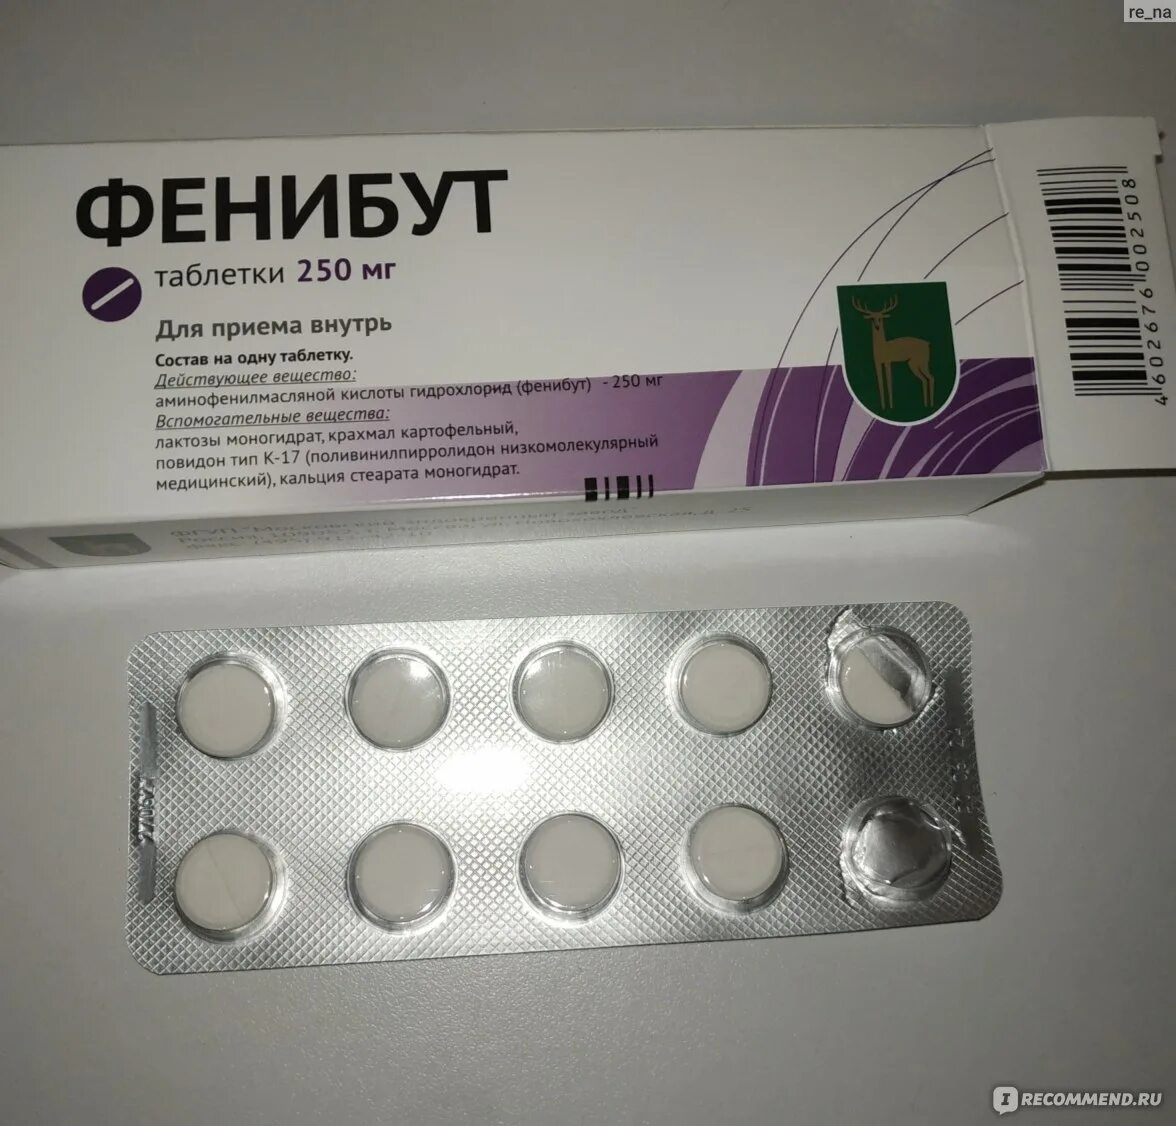 Фенибут 250 производитель Латвия. Фенибут таблетки 250 мг Латвия. Фенибут 250 мг Московский эндокринный завод. Фенибут блистер. Фенибут производители отзывы врачей